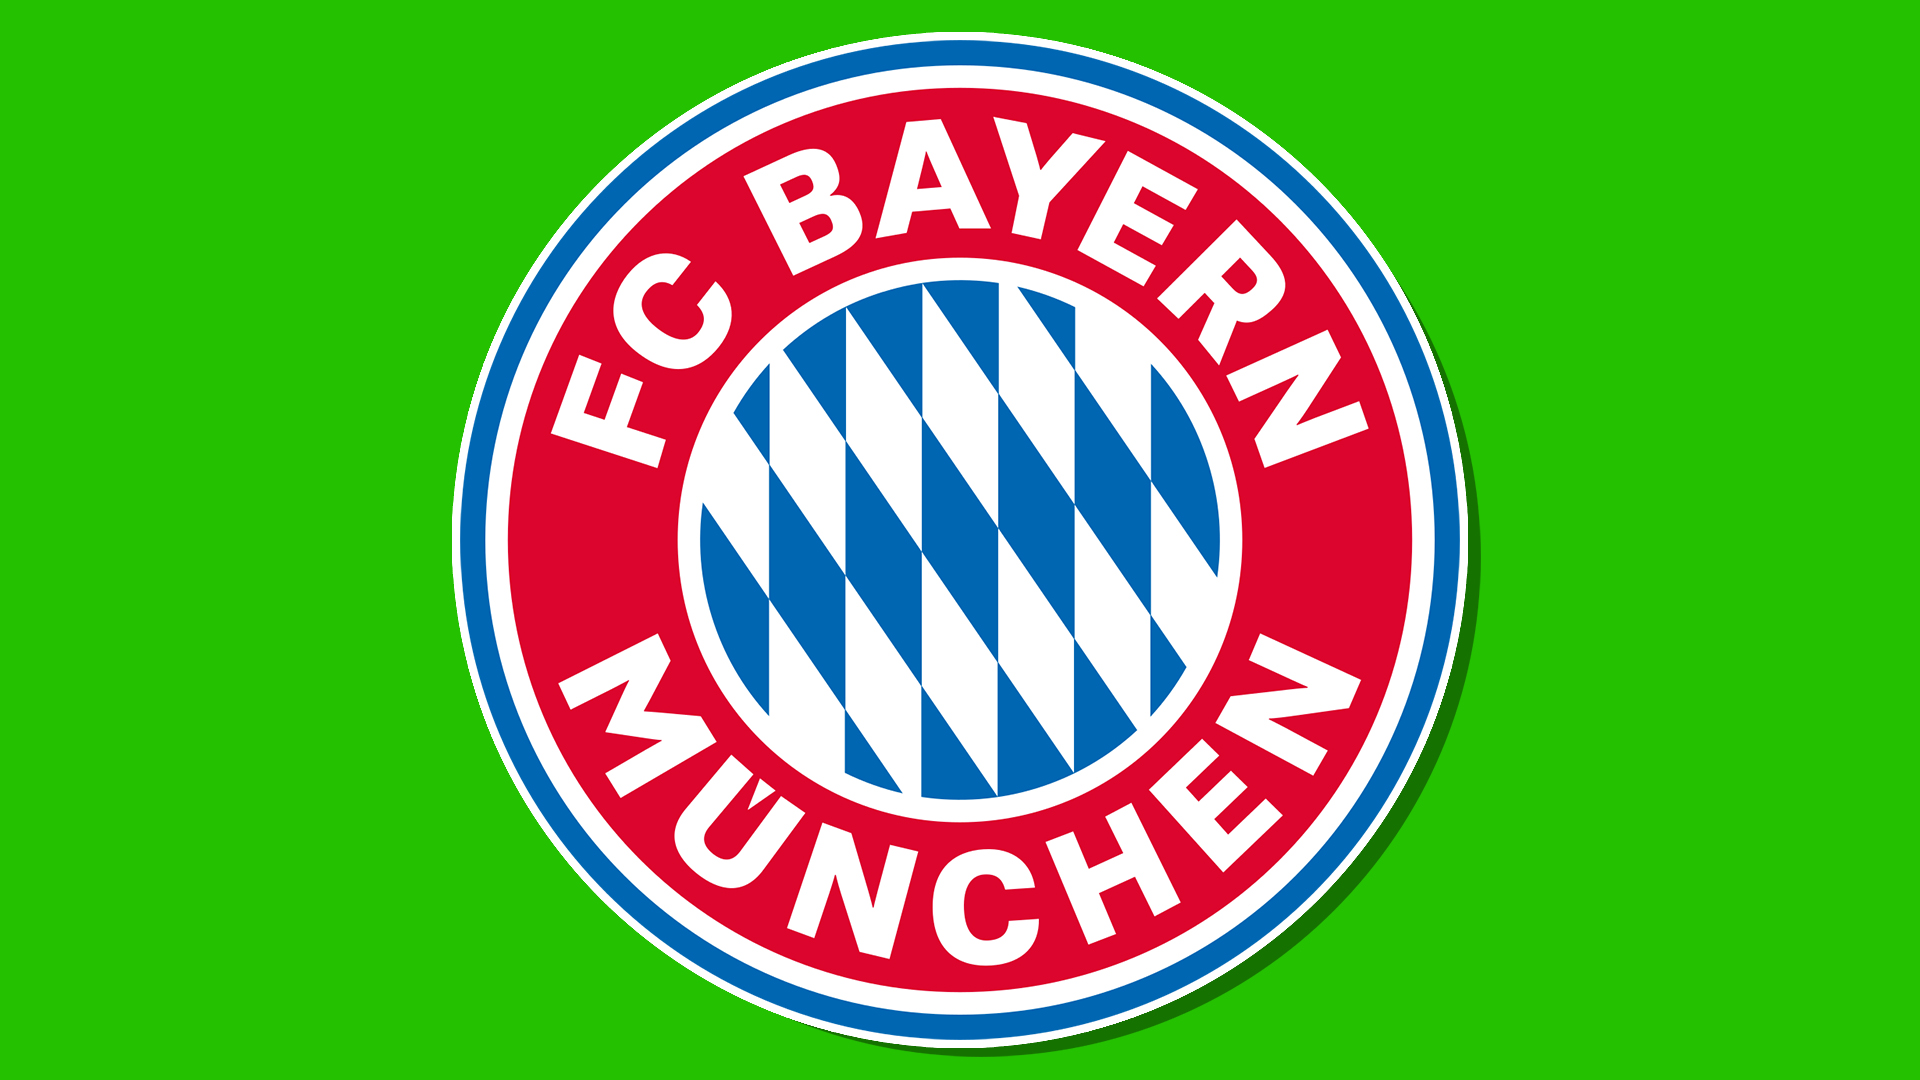 Bayern Munich's badge